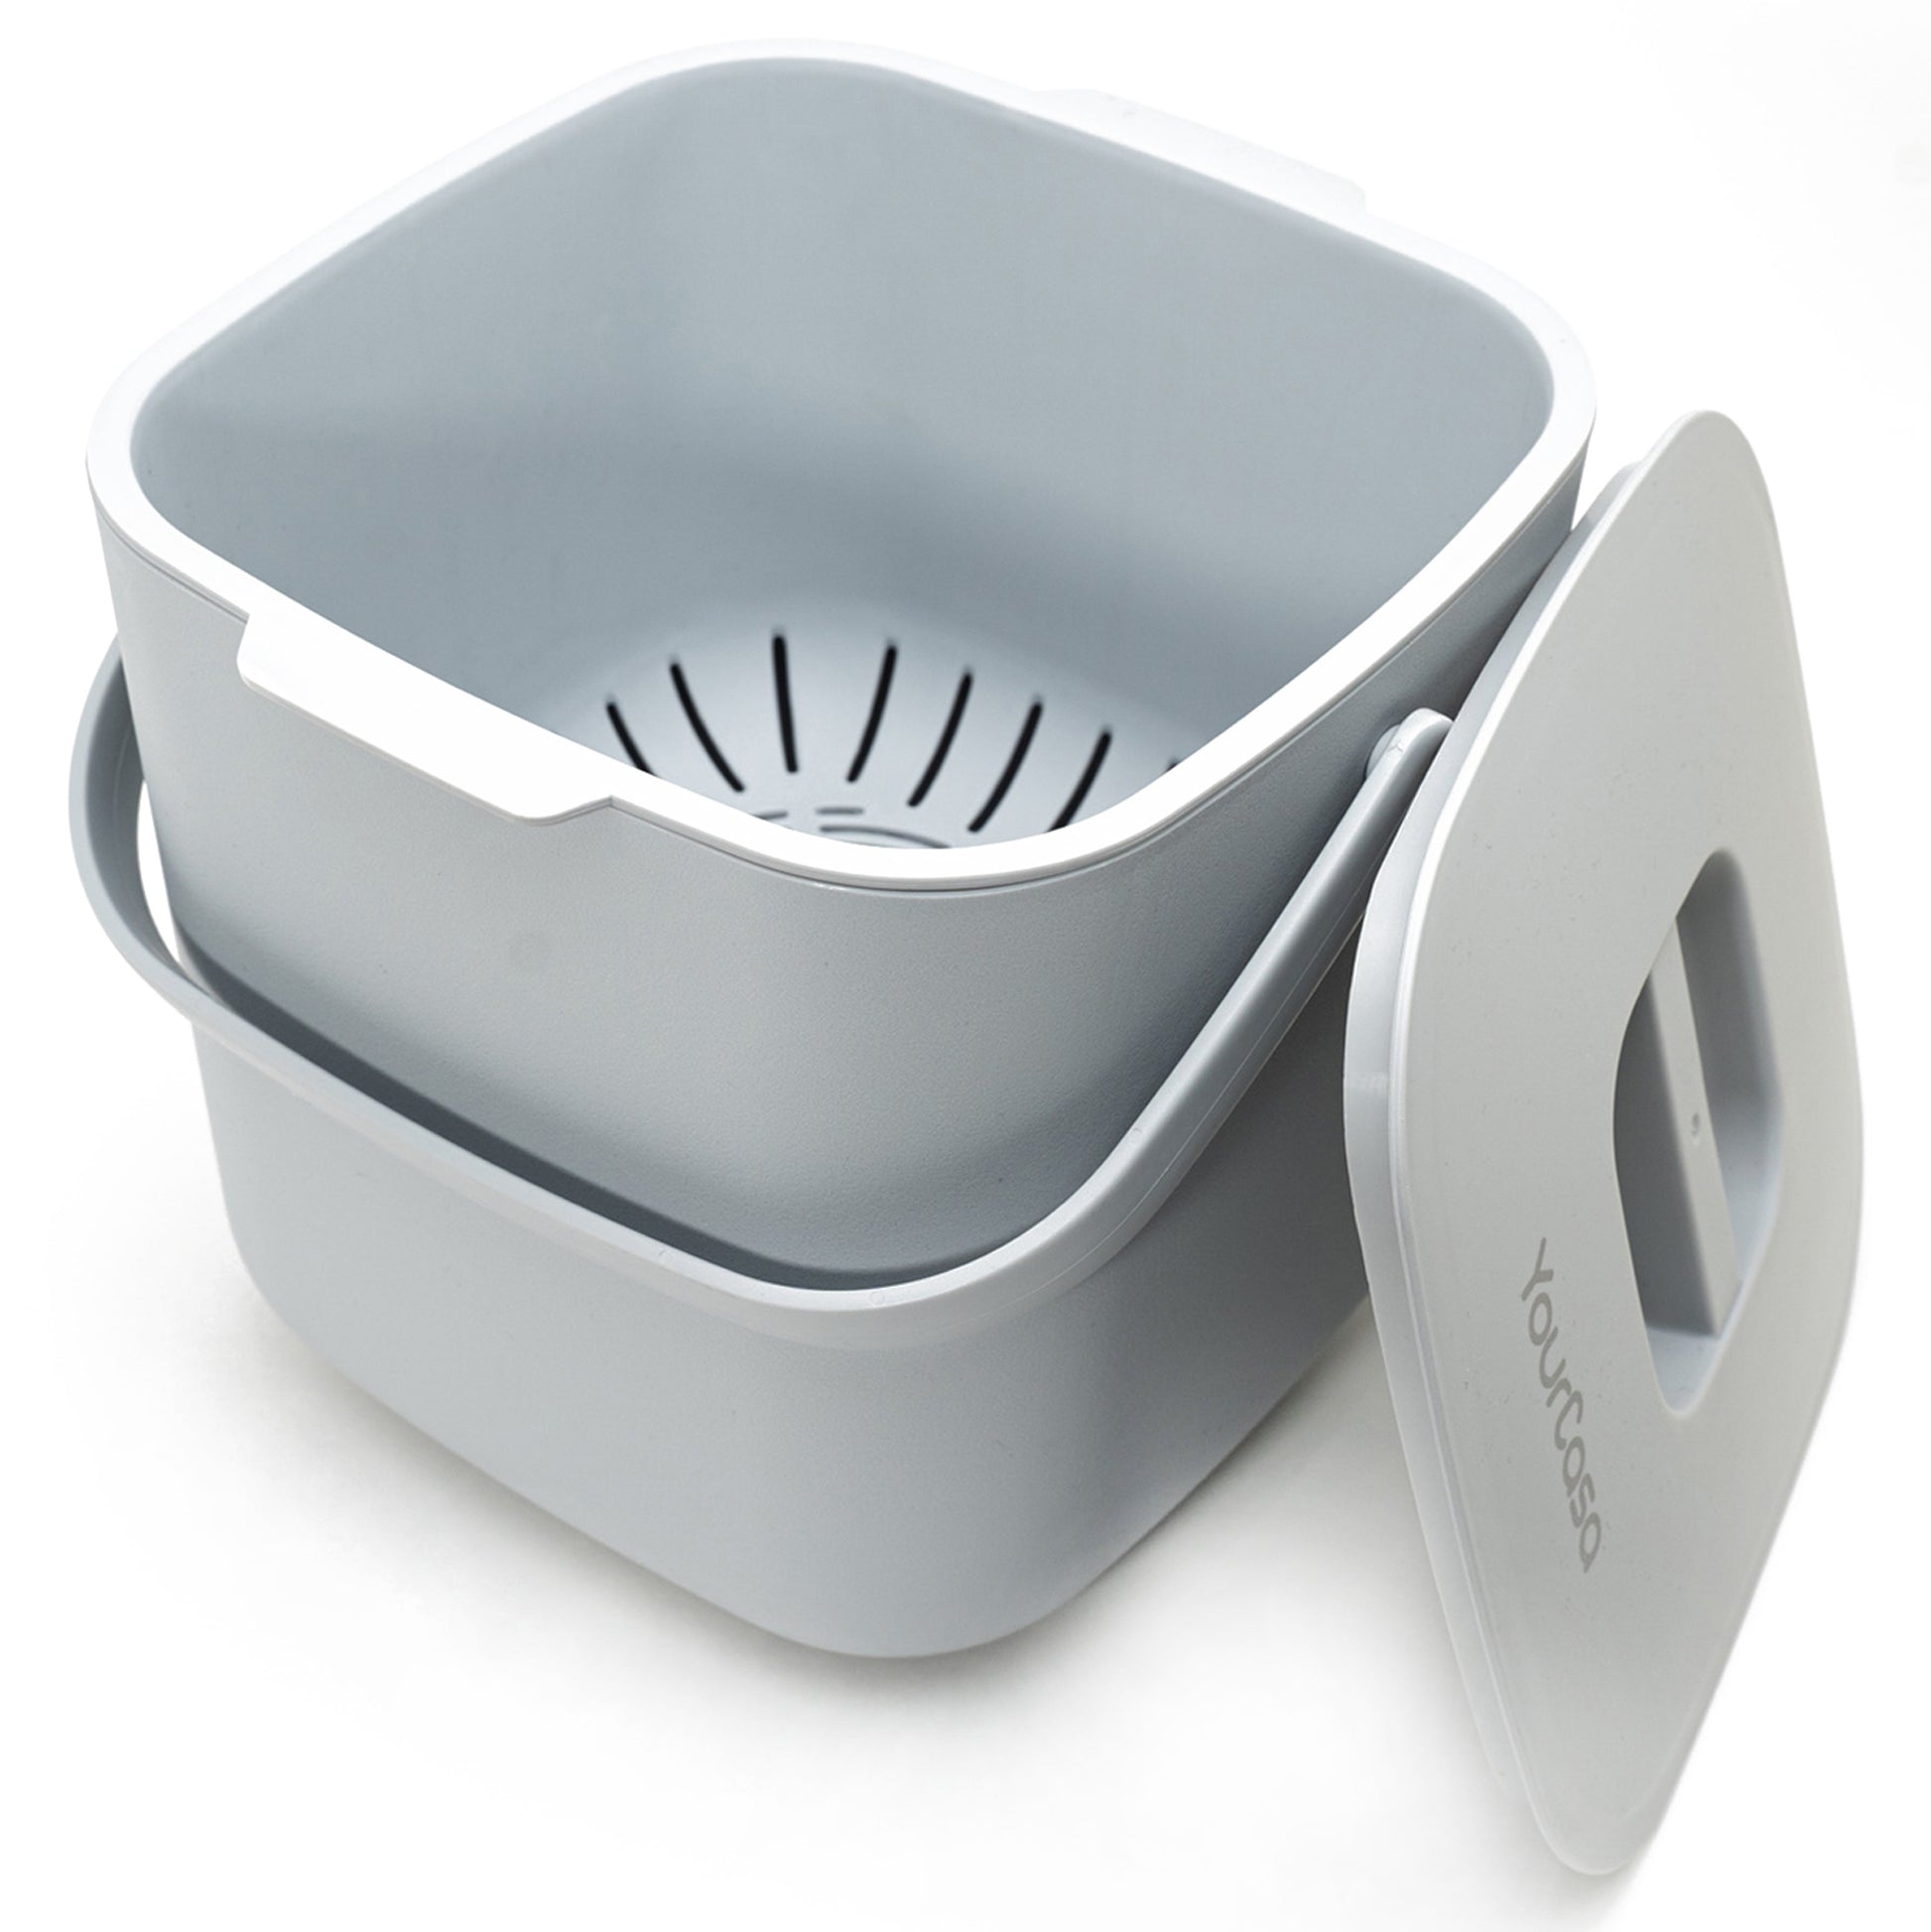 Quadratischer grauer YourCasa® Komposteimer – 7 l – für den alltäglichen Biomüll in der Küche, Behälter mit Siebeinsatz und Deckel, isoliert auf weißem Hintergrund.